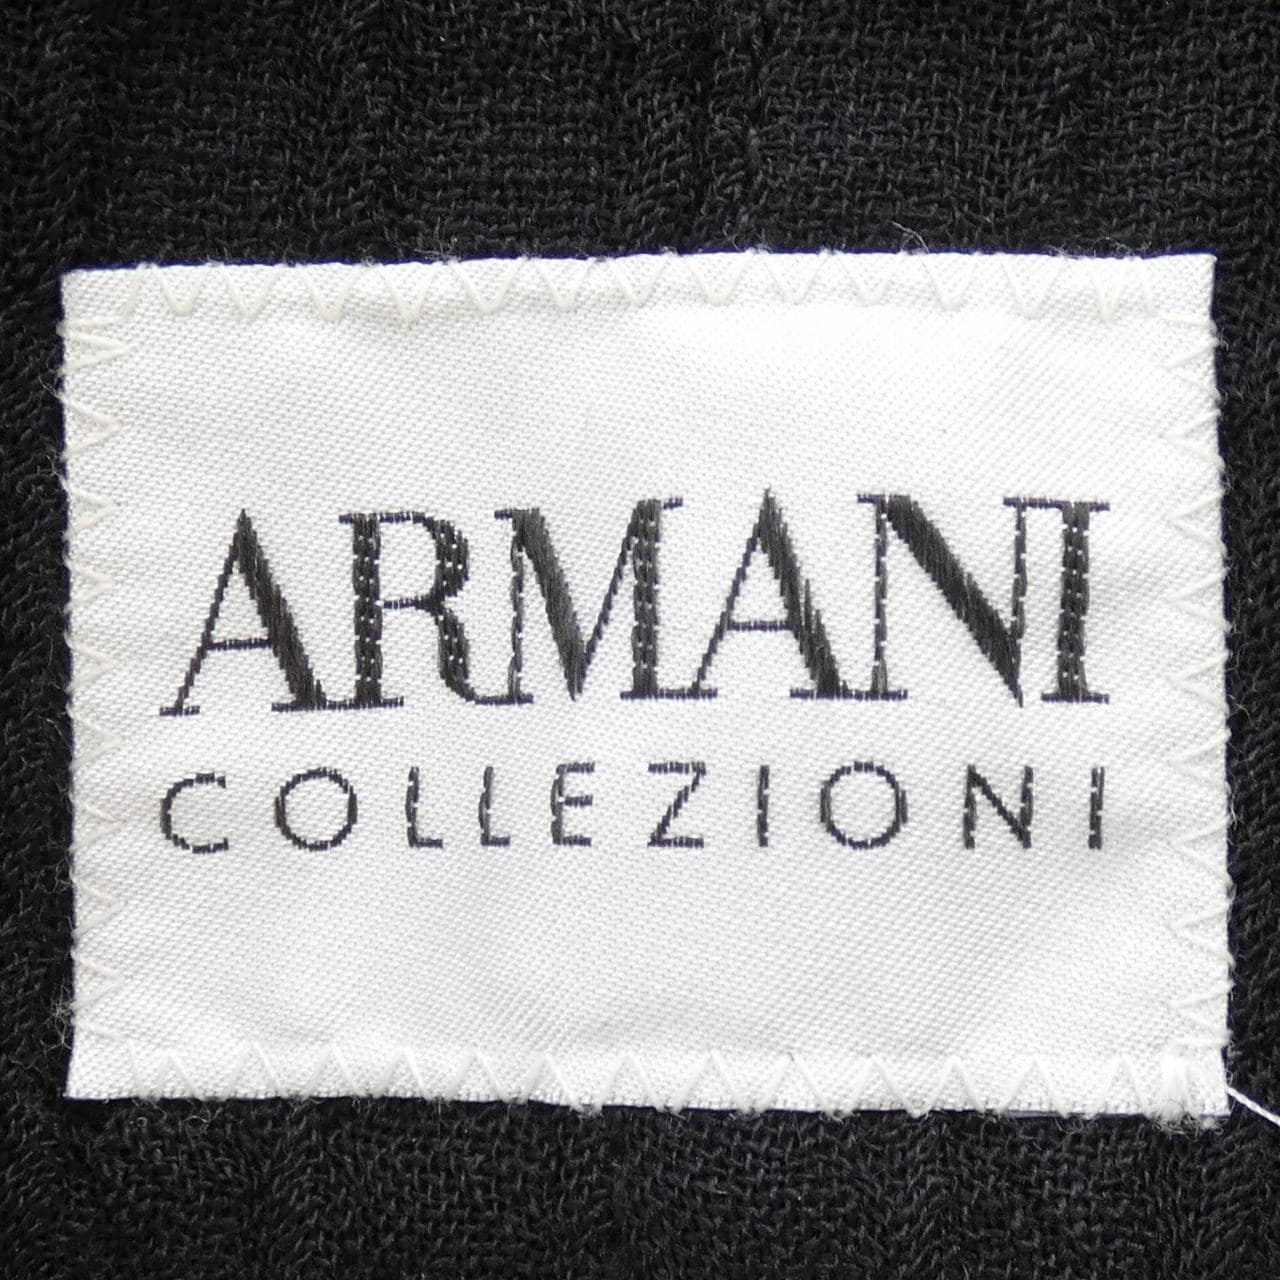 アルマーニコレツィオーニ ARMANI collezioni ジャケット